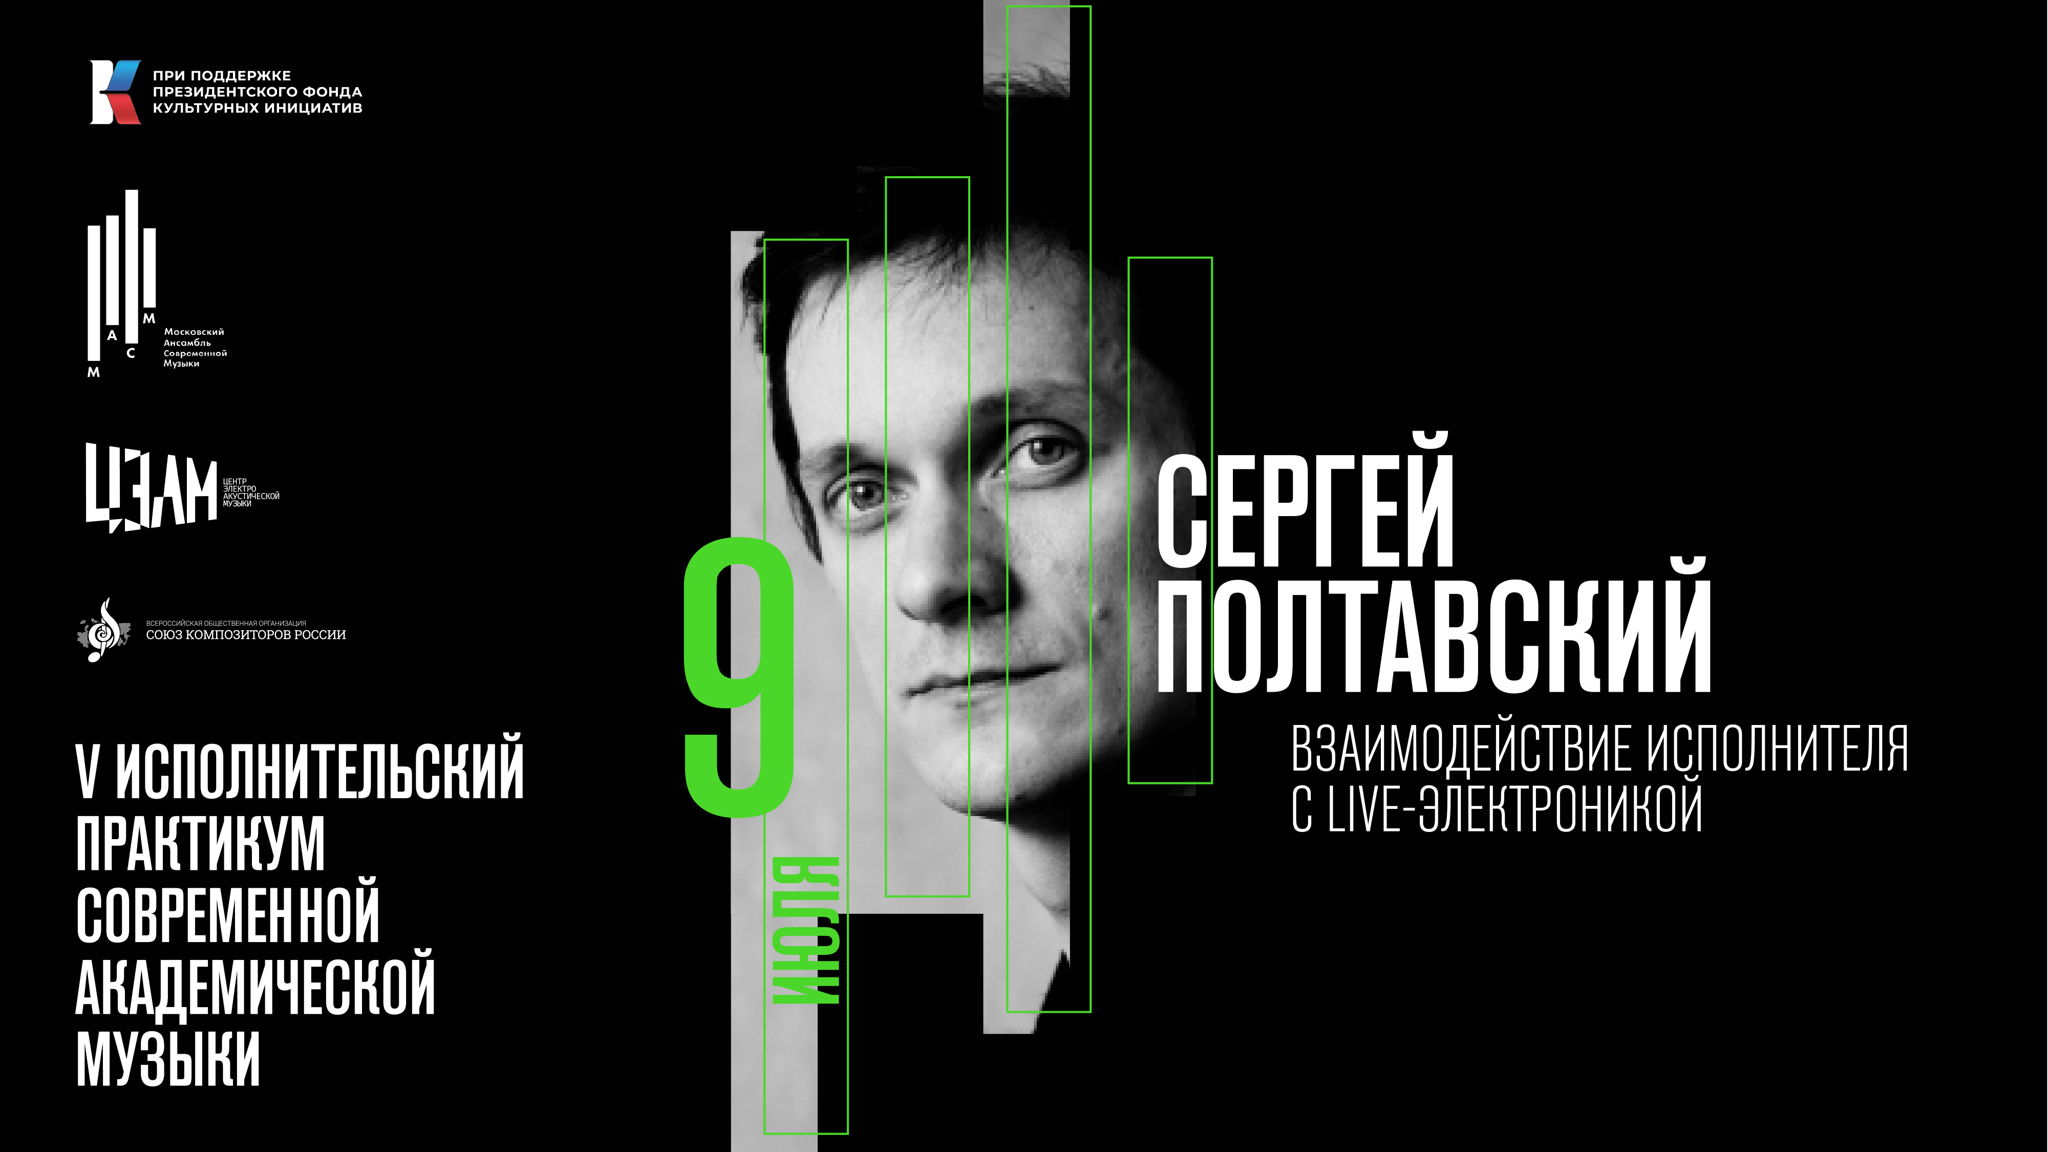 Сергей Полтавский: взаимодействие исполнителя с live-электроникой